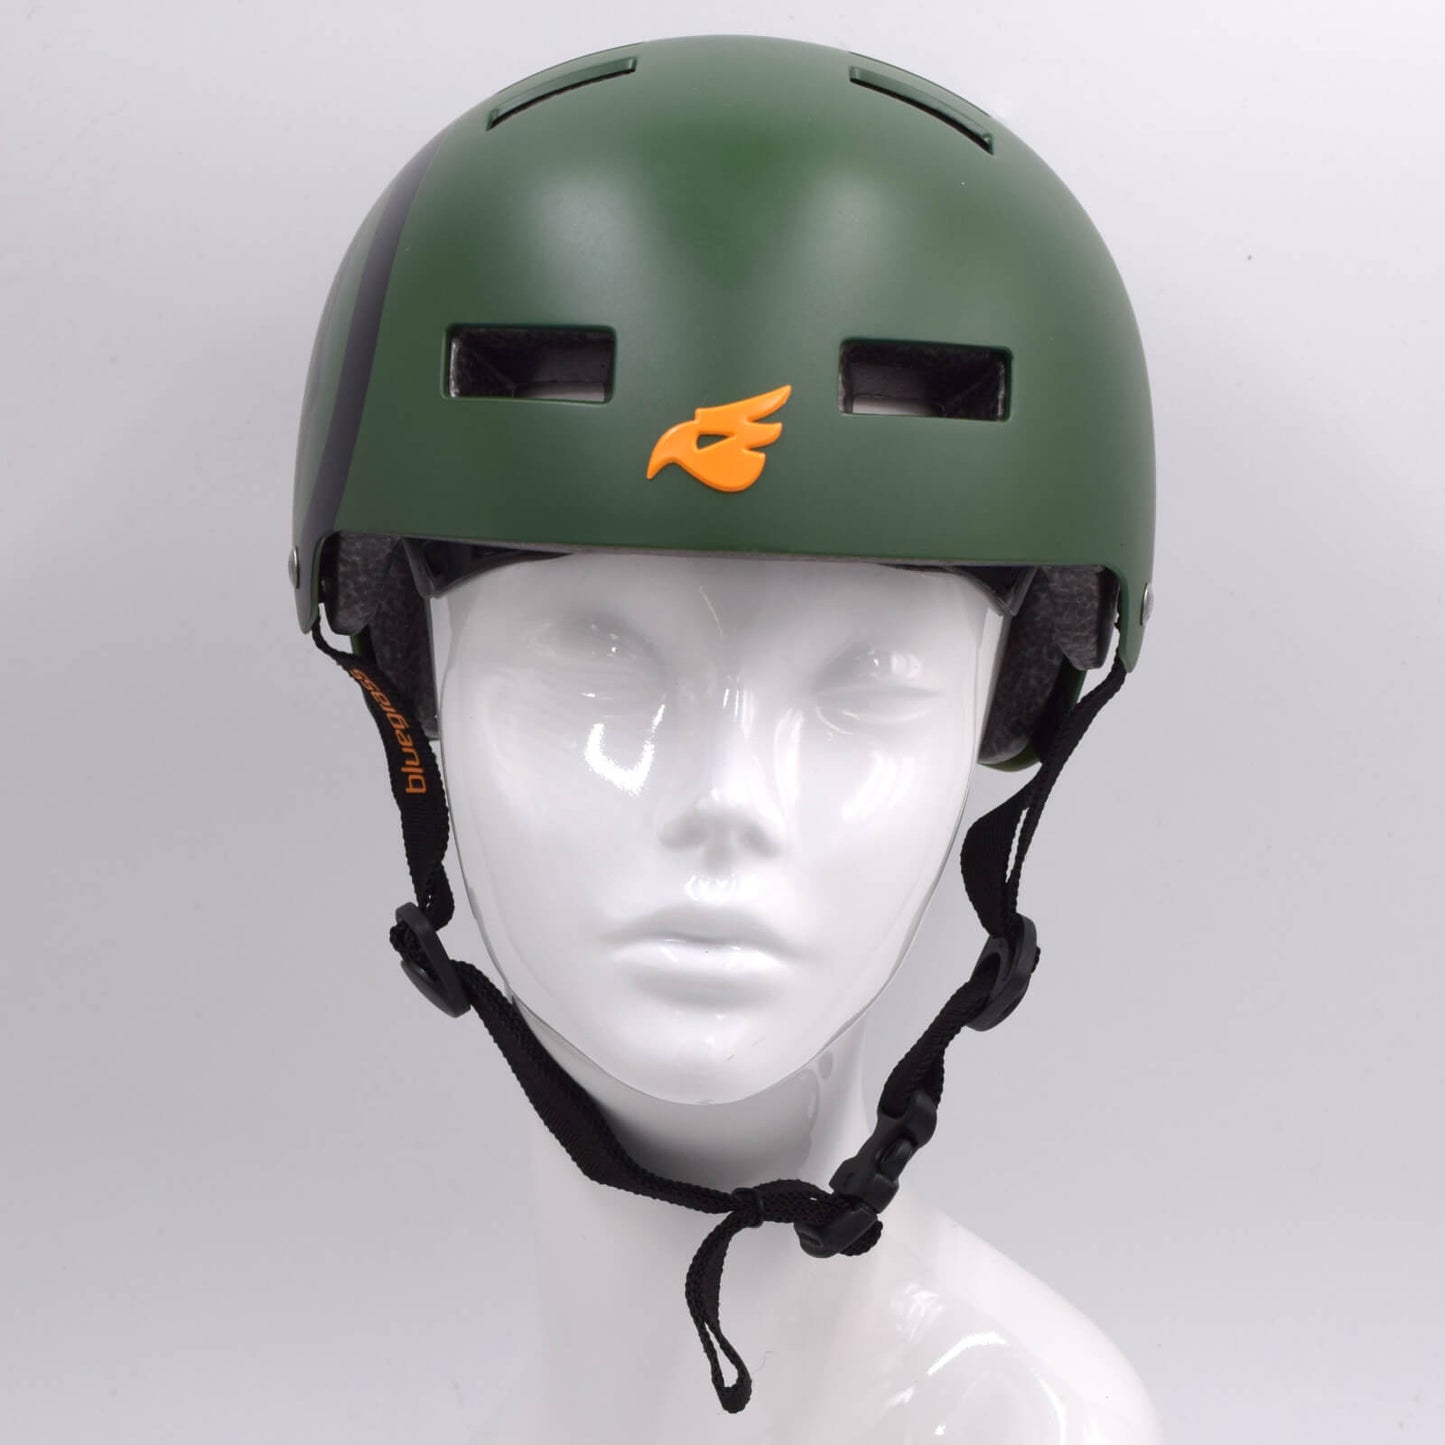 Bluegrass Super Bold BMX Dirt Lid Cycling Helmet Skull Green Small (51-55cm)